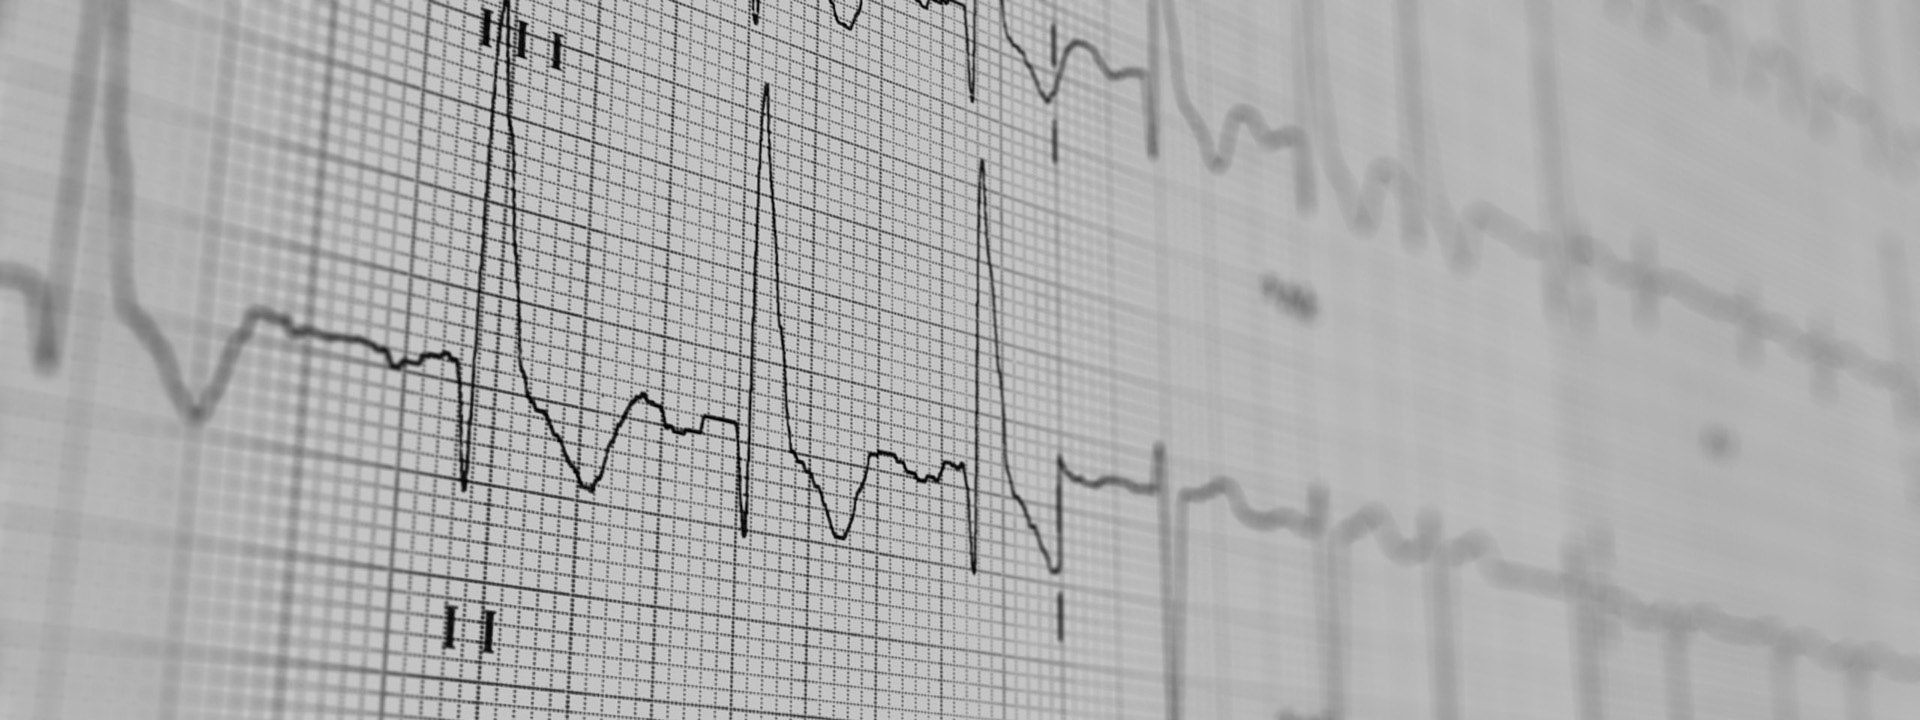 Abfrage, Vermessung und Umprogrammierung von Herzschrittmachern und Defibrillatoren (ICD).